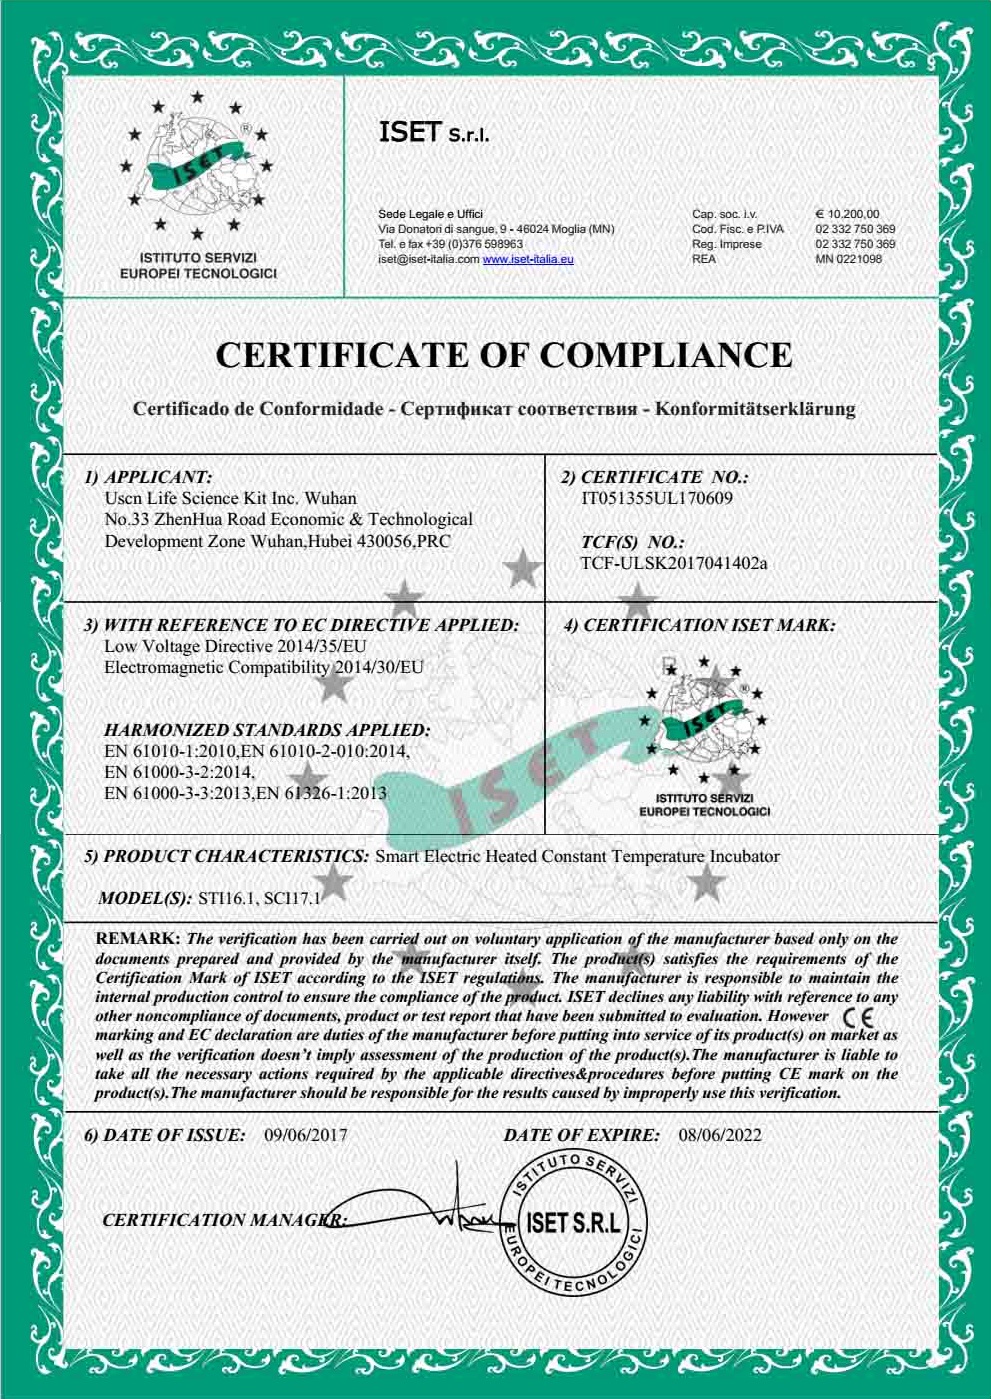 祝贺我公司SCI17.1、STI16.1智能恒温箱获得CE证书